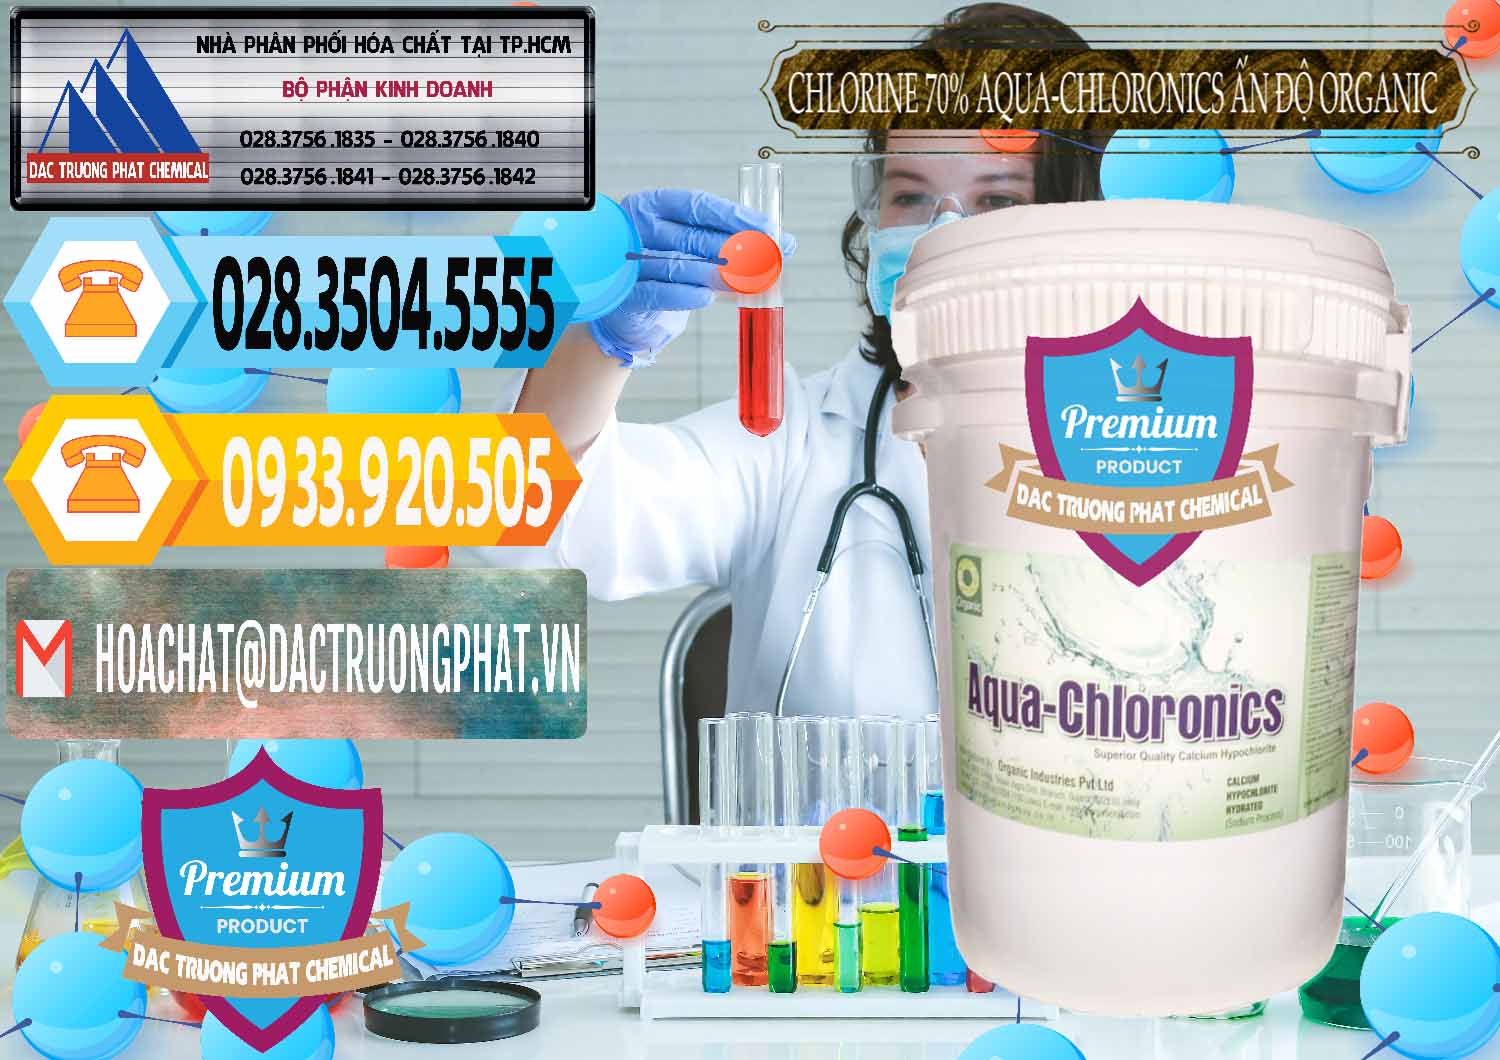 Kinh doanh & bán Chlorine – Clorin 70% Aqua-Chloronics Ấn Độ Organic India - 0211 - Nơi phân phối & cung cấp hóa chất tại TP.HCM - hoachattayrua.net